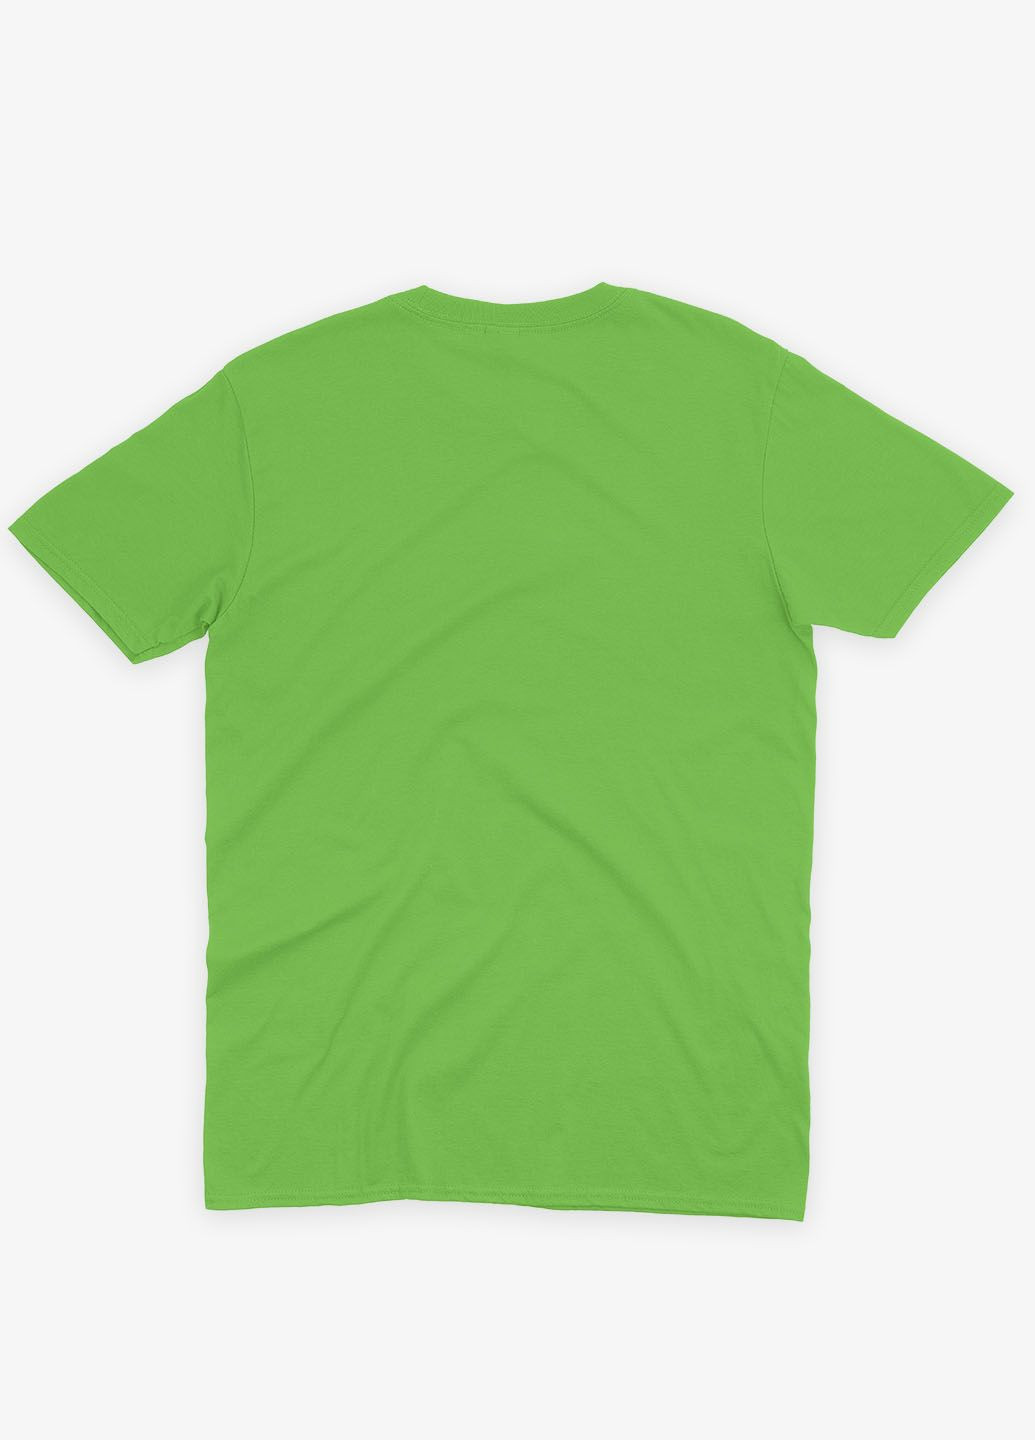 Салатова демісезонна футболка для хлопчика з принтом супергероя - людина-павук (ts001-1-kiw-006-014-016-b) Modno